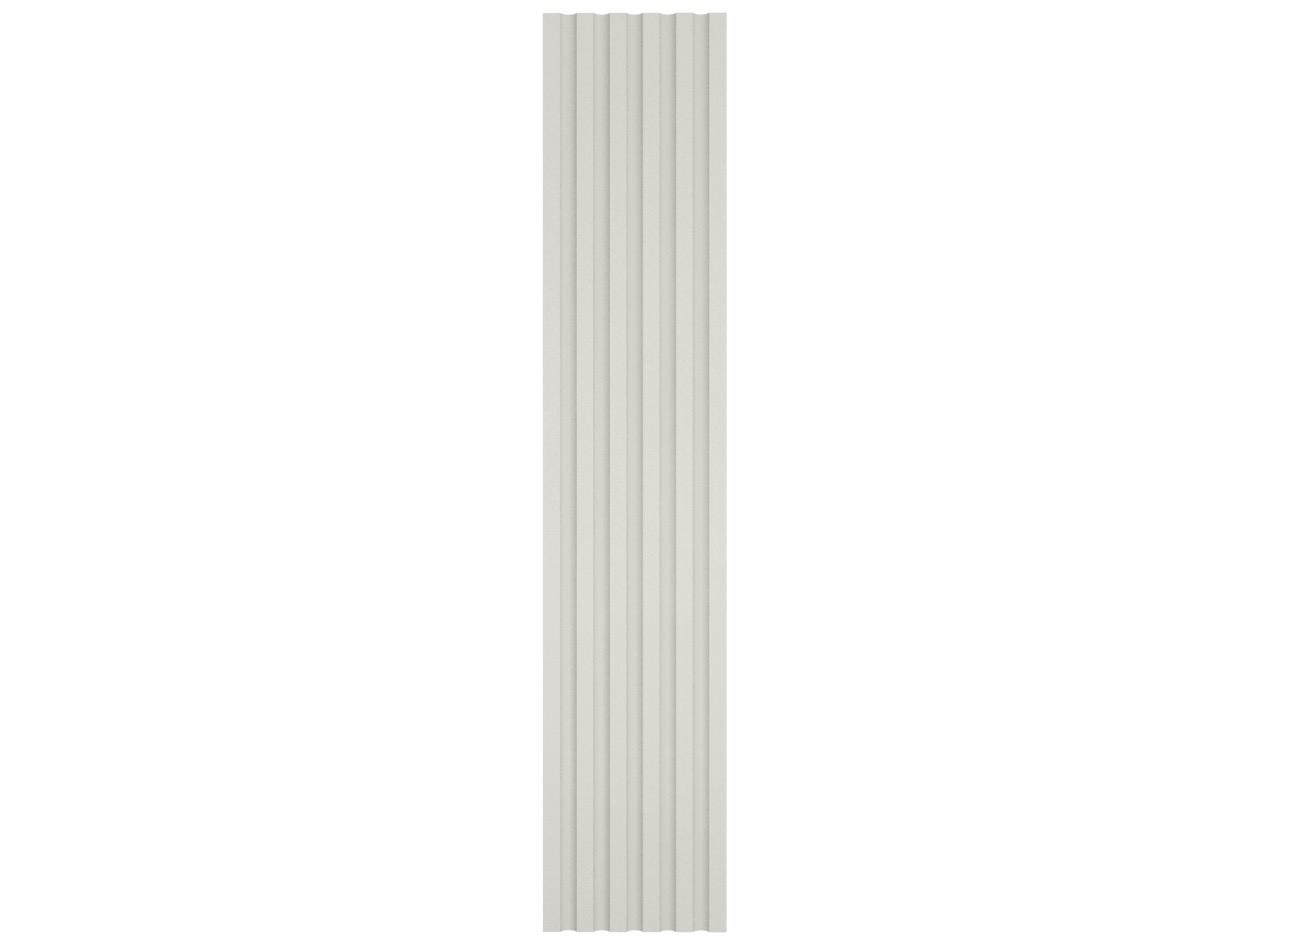 Les 400 - Lesene in polistirene spalmato con graniglie - Decorget - Ital Decori - Image 0